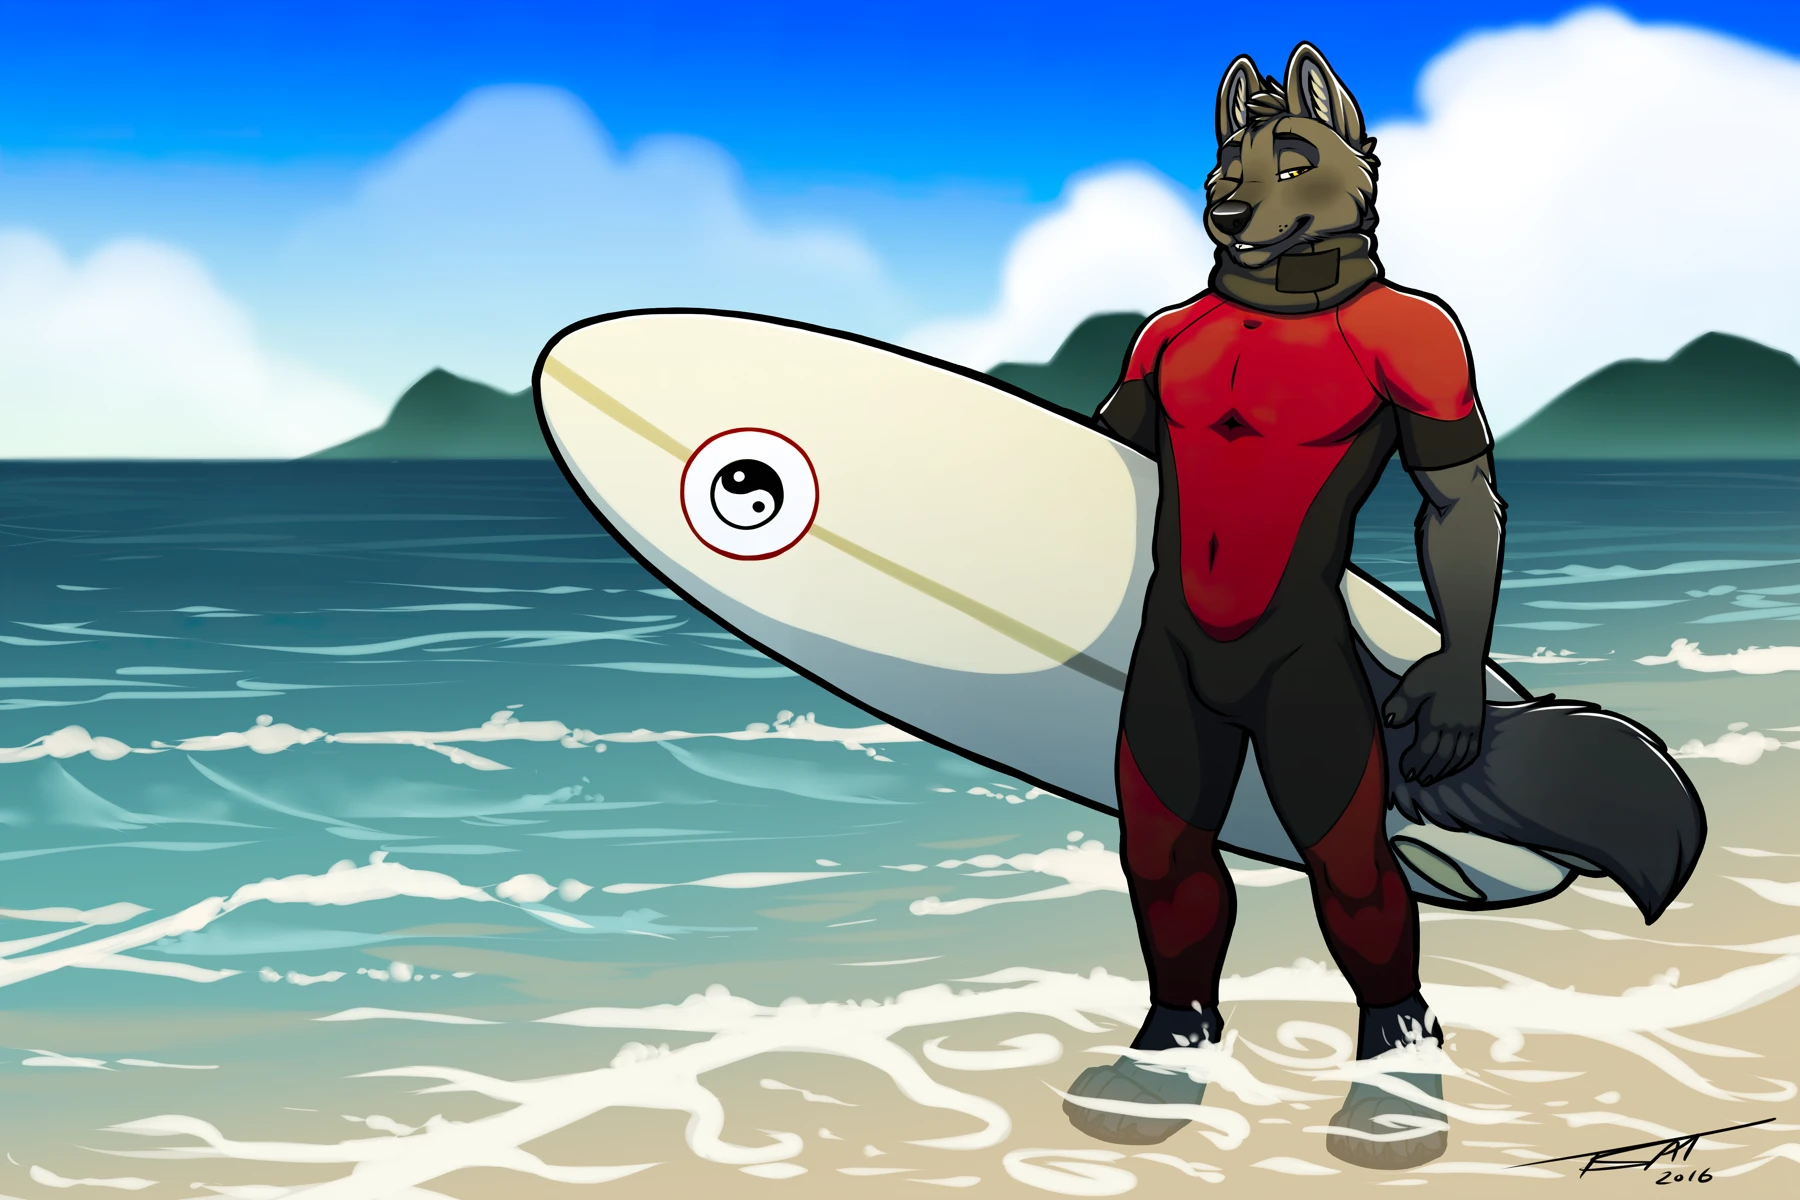 Tsaiwolf2016-SurferShep-wetsuit